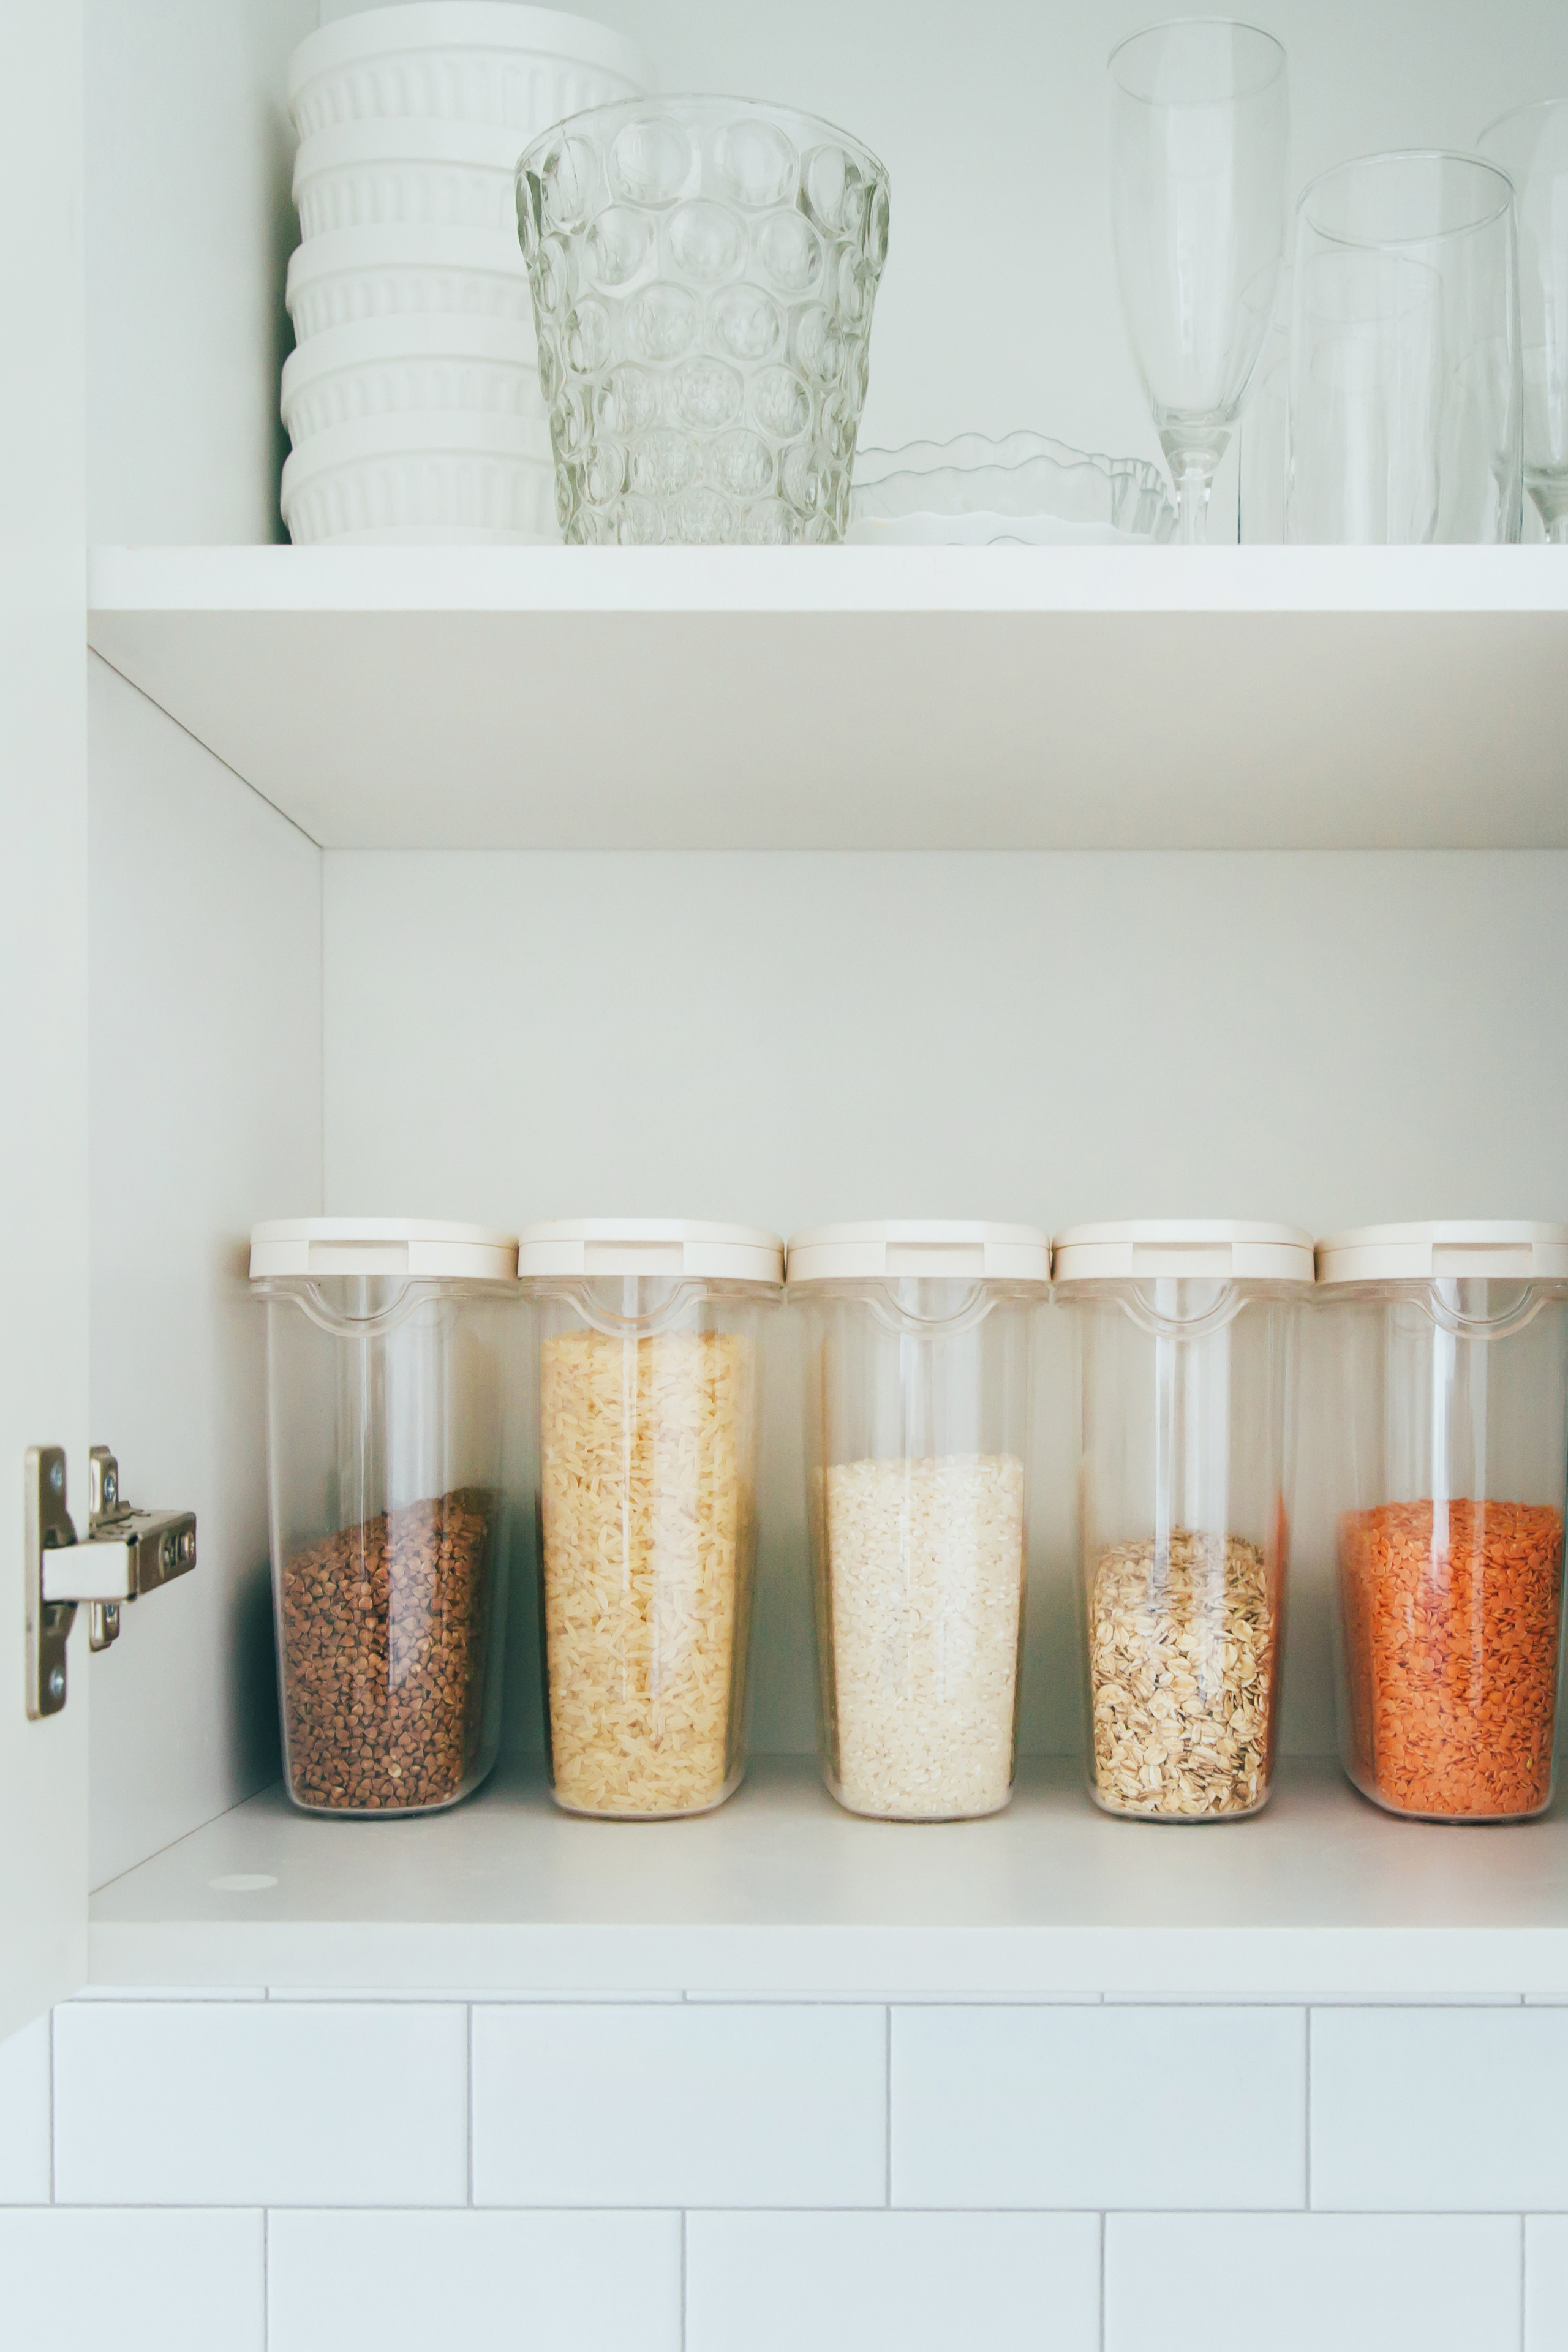 Organisert kjøkkenskap med samme type beholder til ulike matvarer